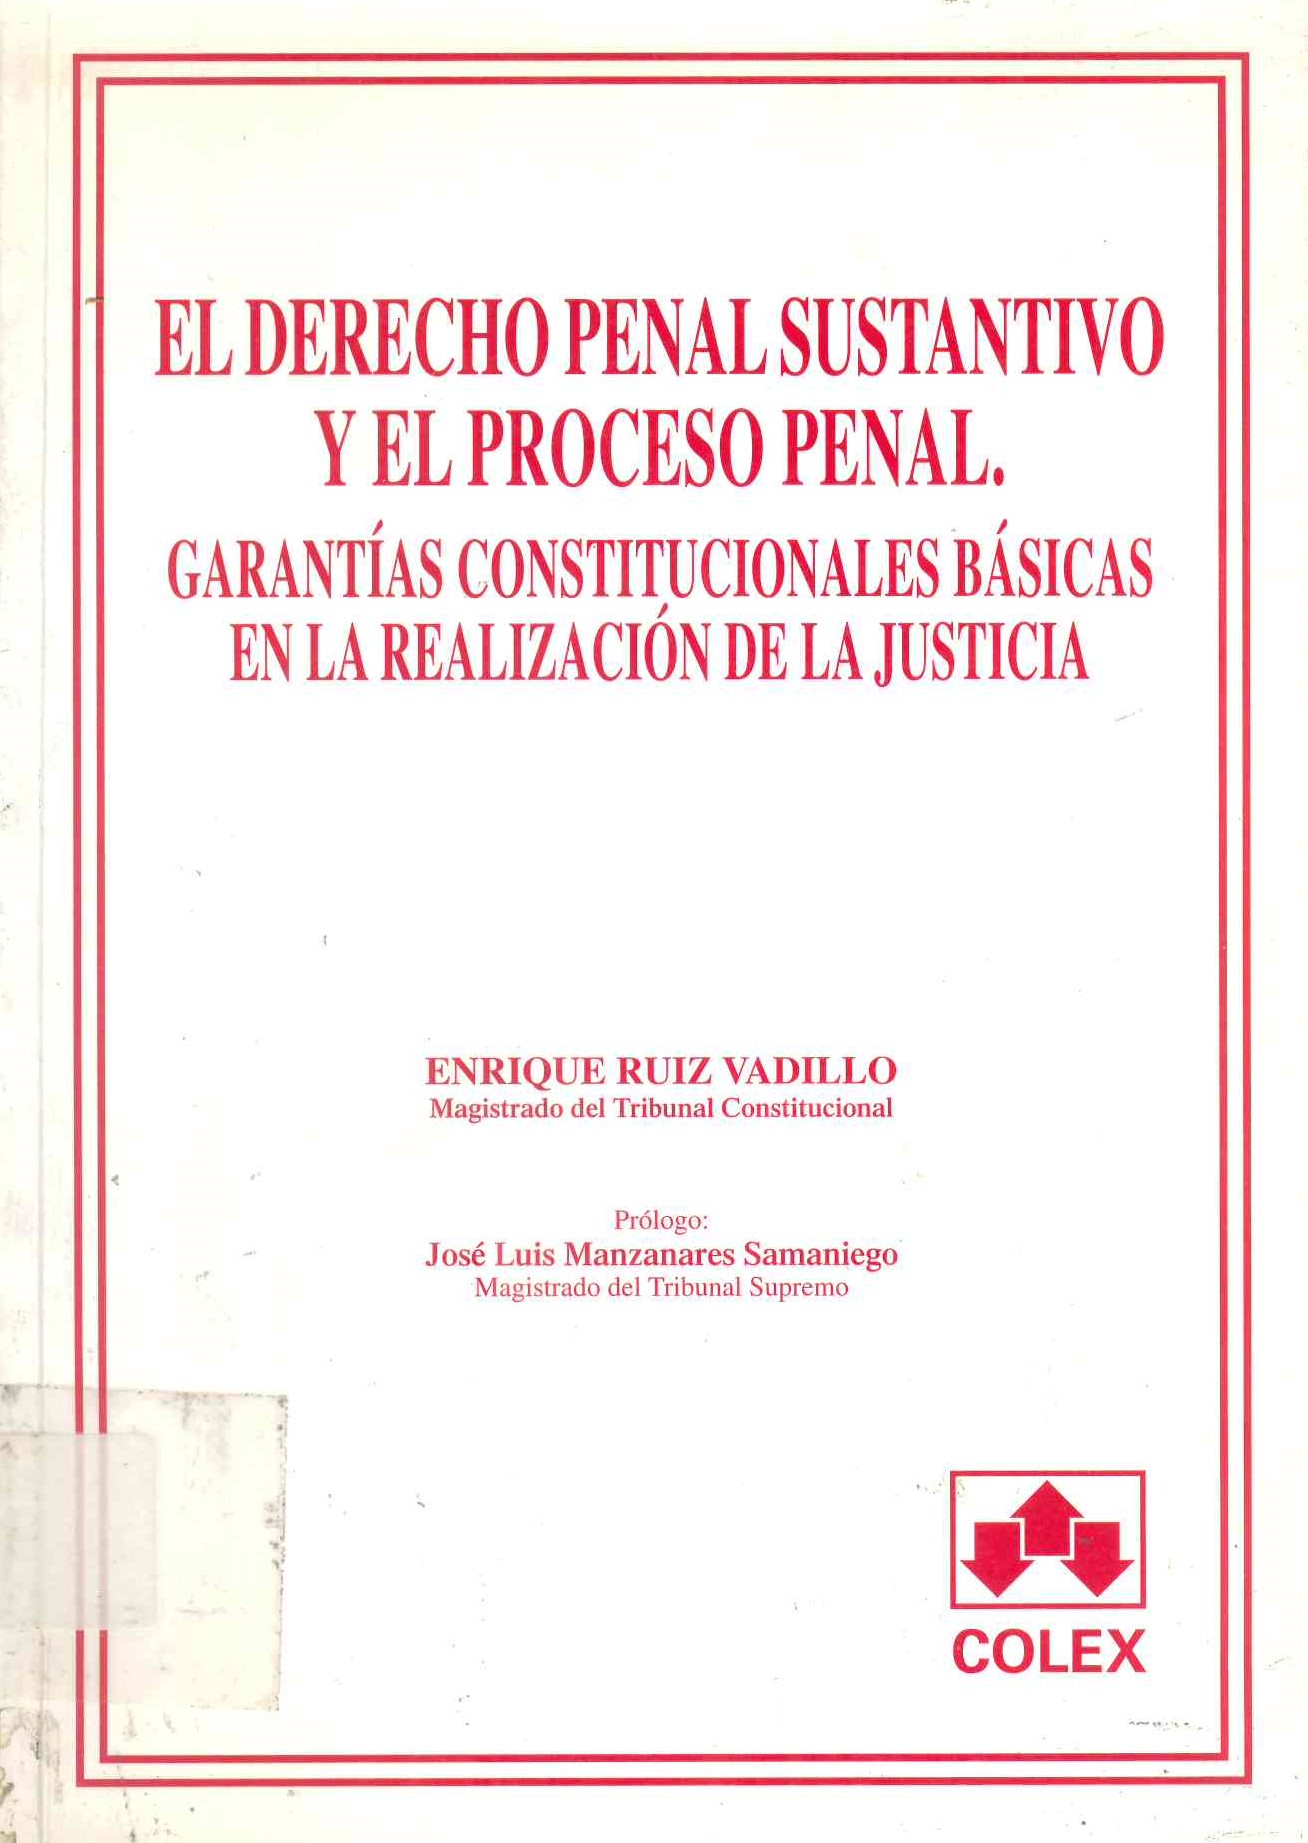 El derecho penal sustantivo y el proceso penal : garantías constitucionales básicas en la realización de la justicia